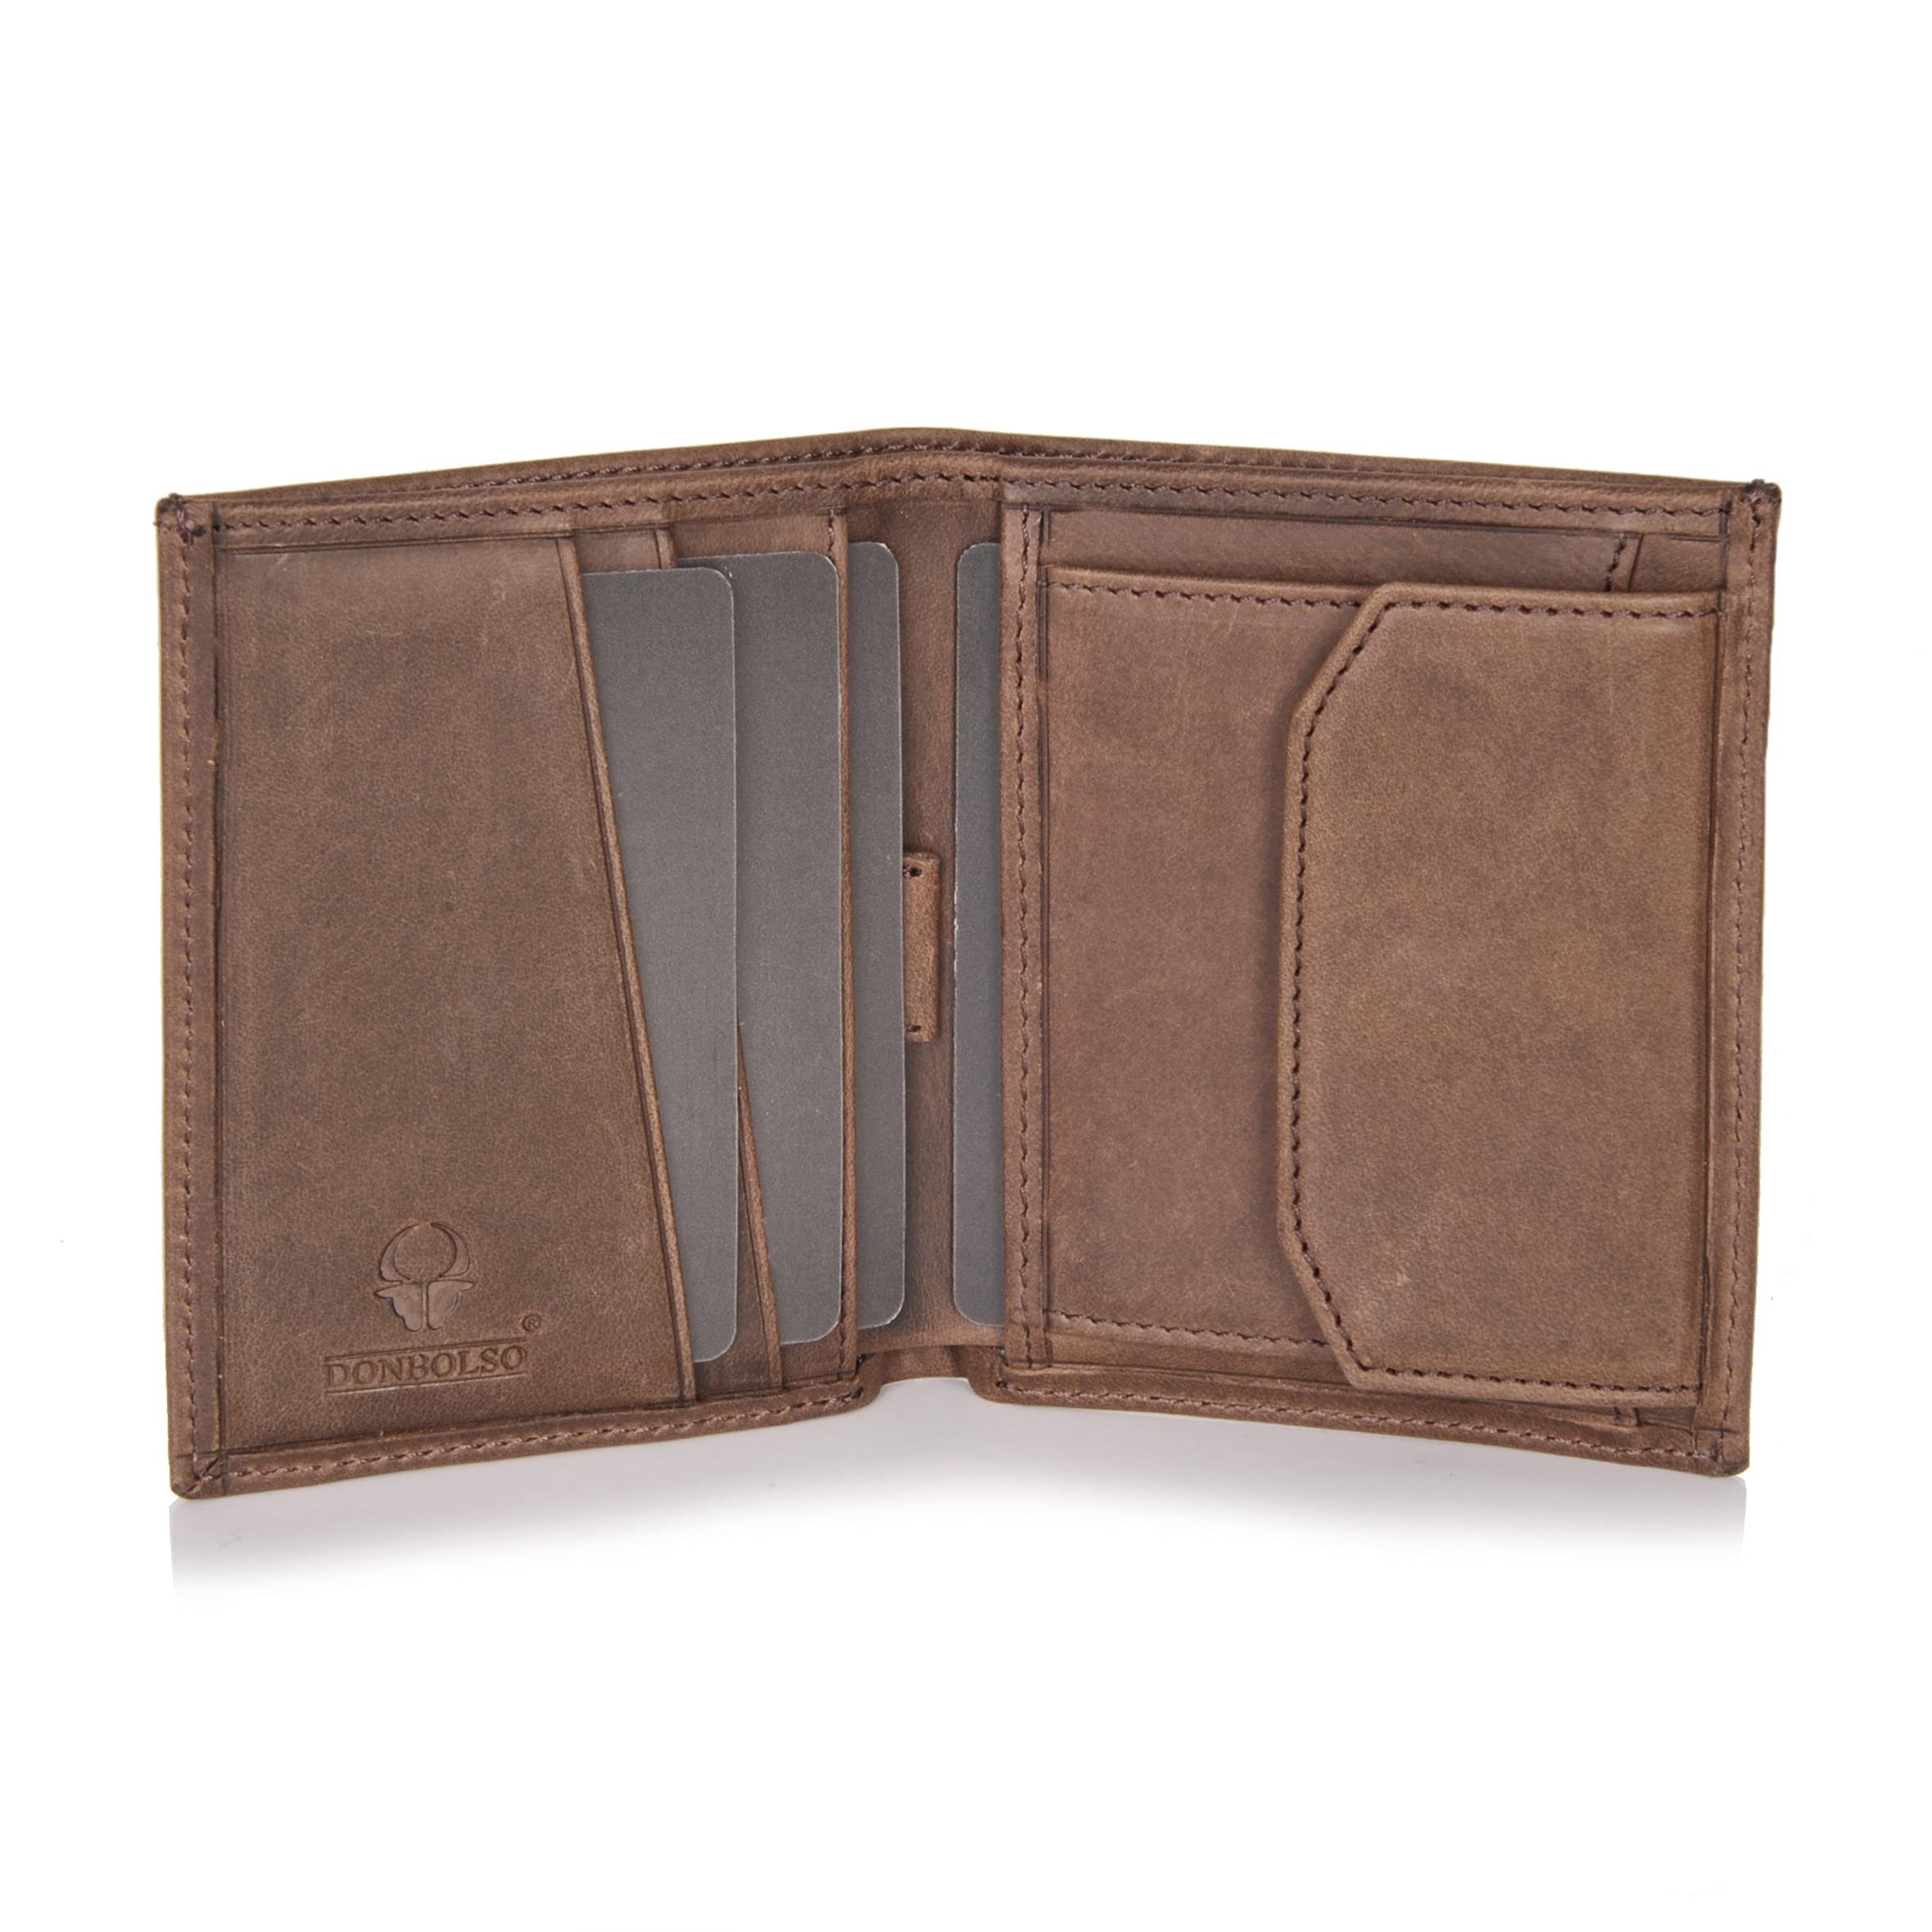 Donbolso Mini Geldbörse Slim Wallet Echtleder Geldbeutel RFID Schutz 6 Kartenfächer, Vintage Braun Mit Mnzfachvintage